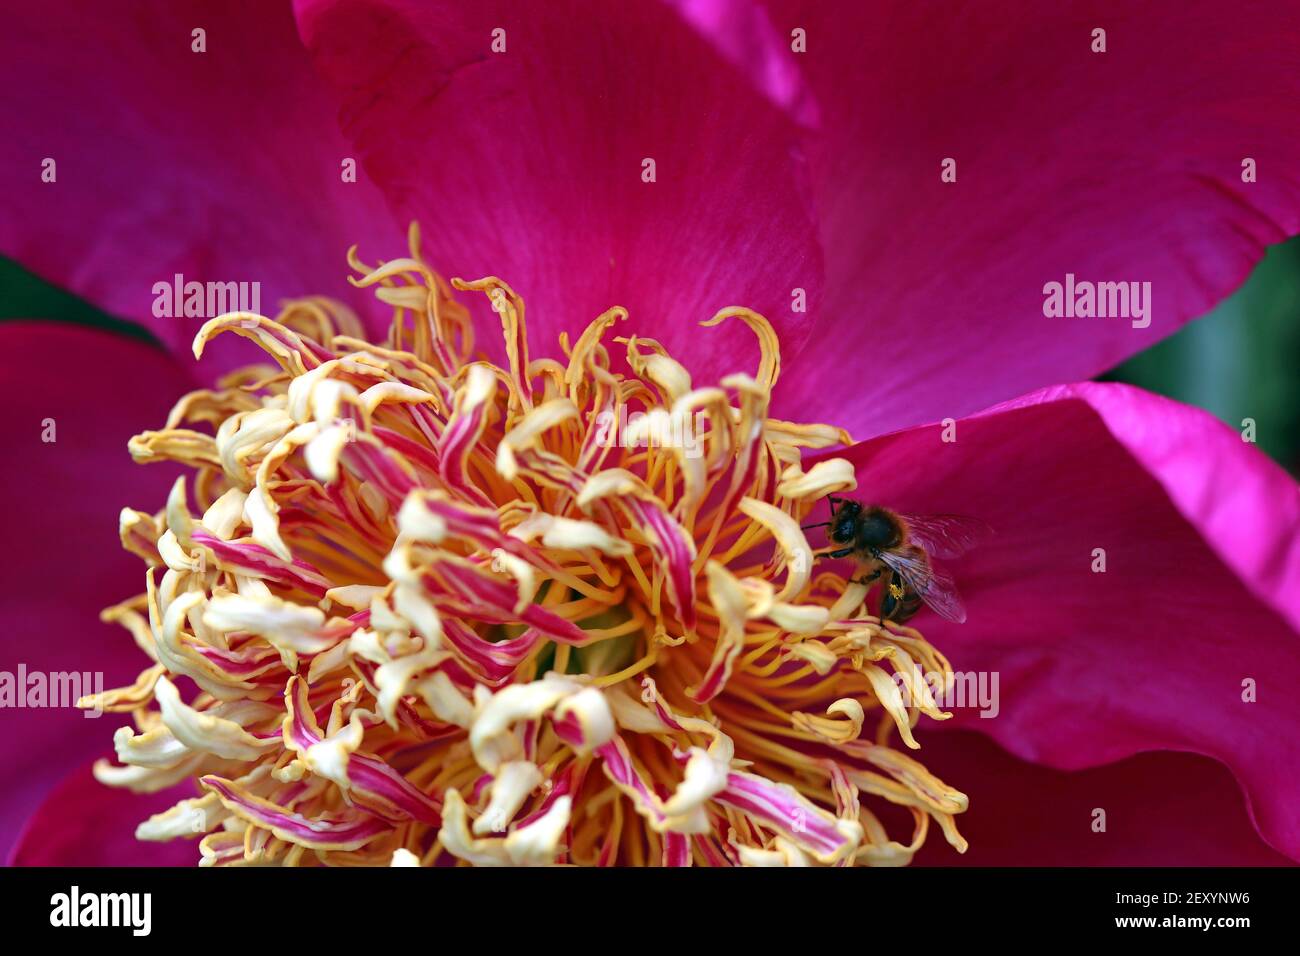 Macro disparo de brillante peonía herbácea magenta con espiral como estambres amarillo-rosados; una abeja de miel recoge el polen de los estambres. Familia Paeoniaceae Foto de stock